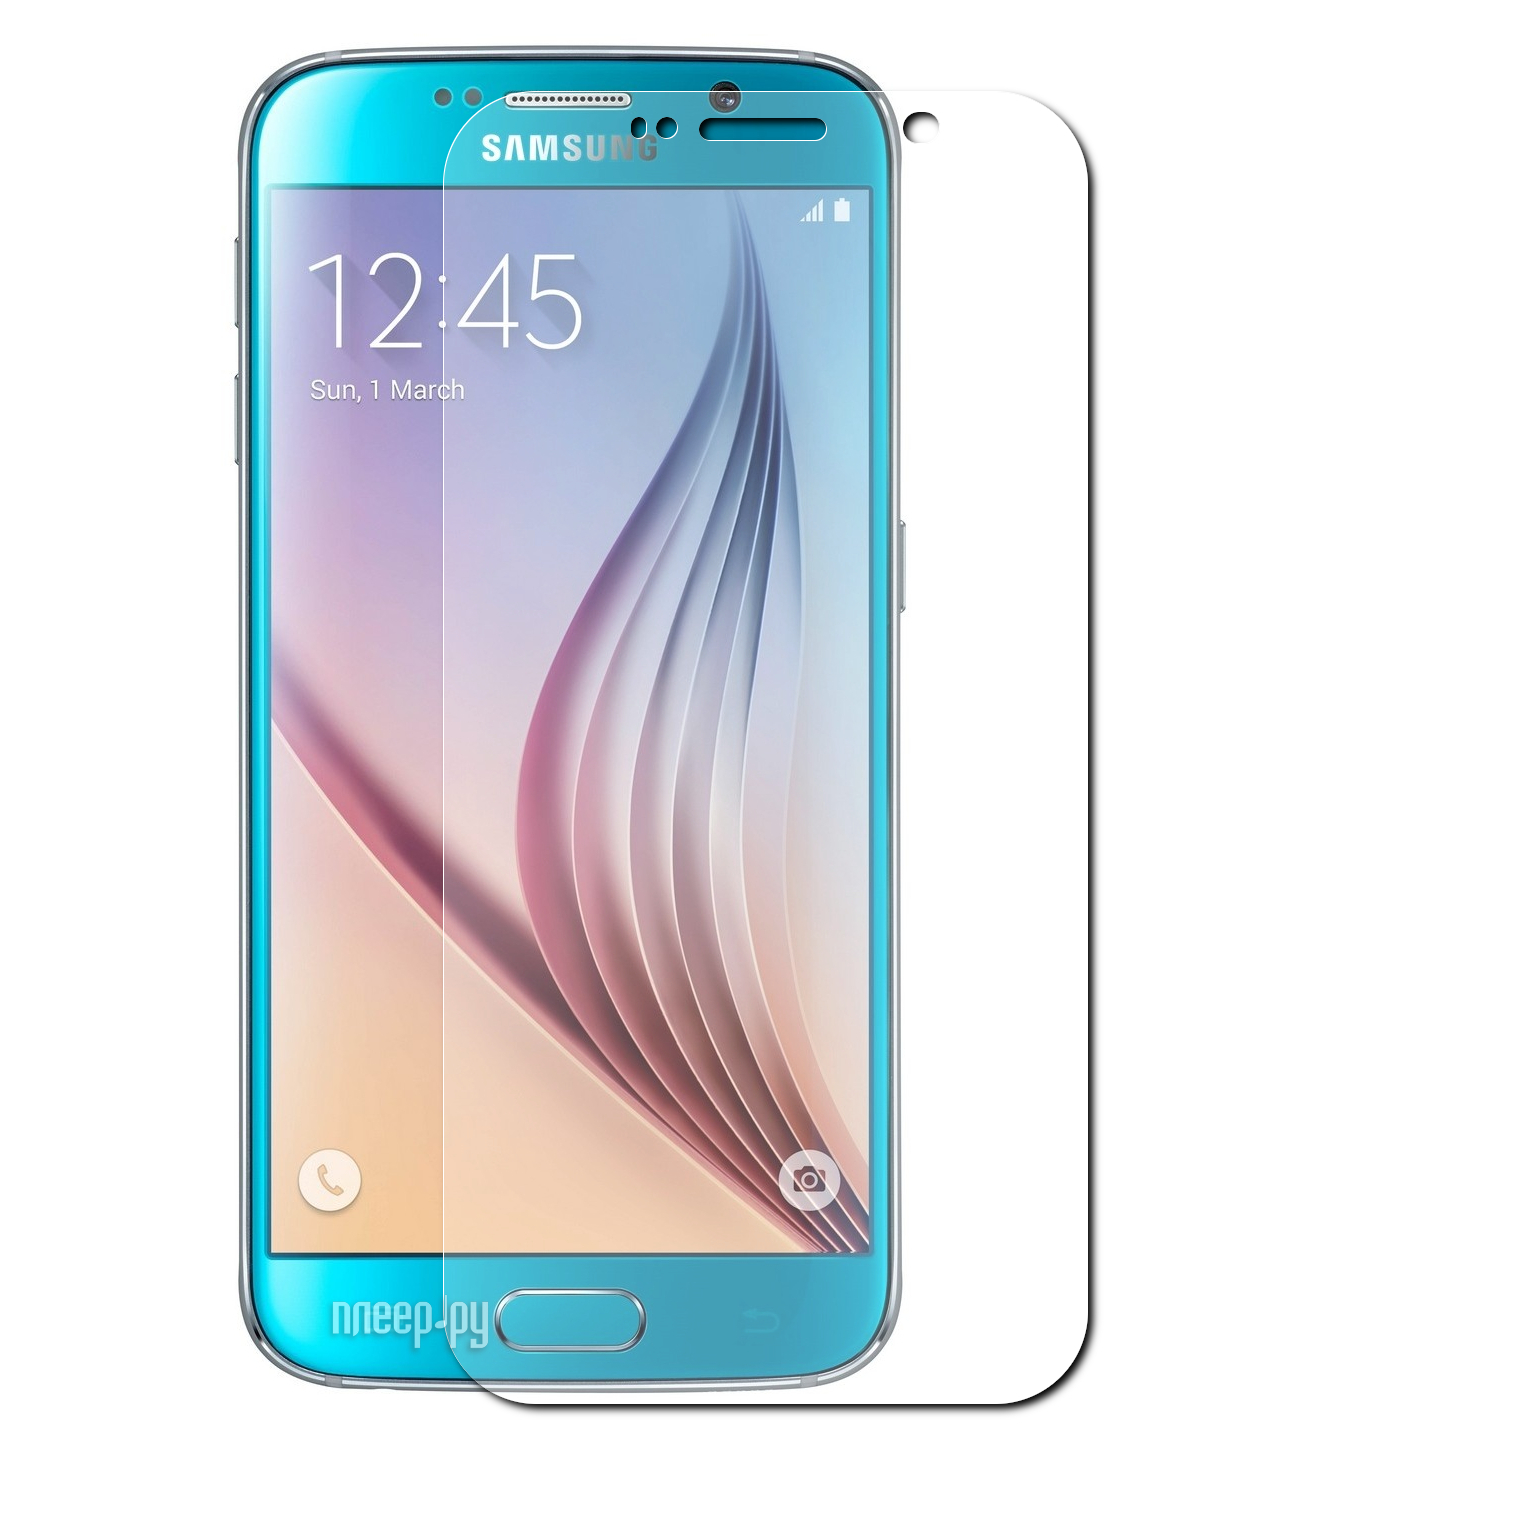    Samsung Galaxy S6 Dekken 2.5D 0.26mm 203206 